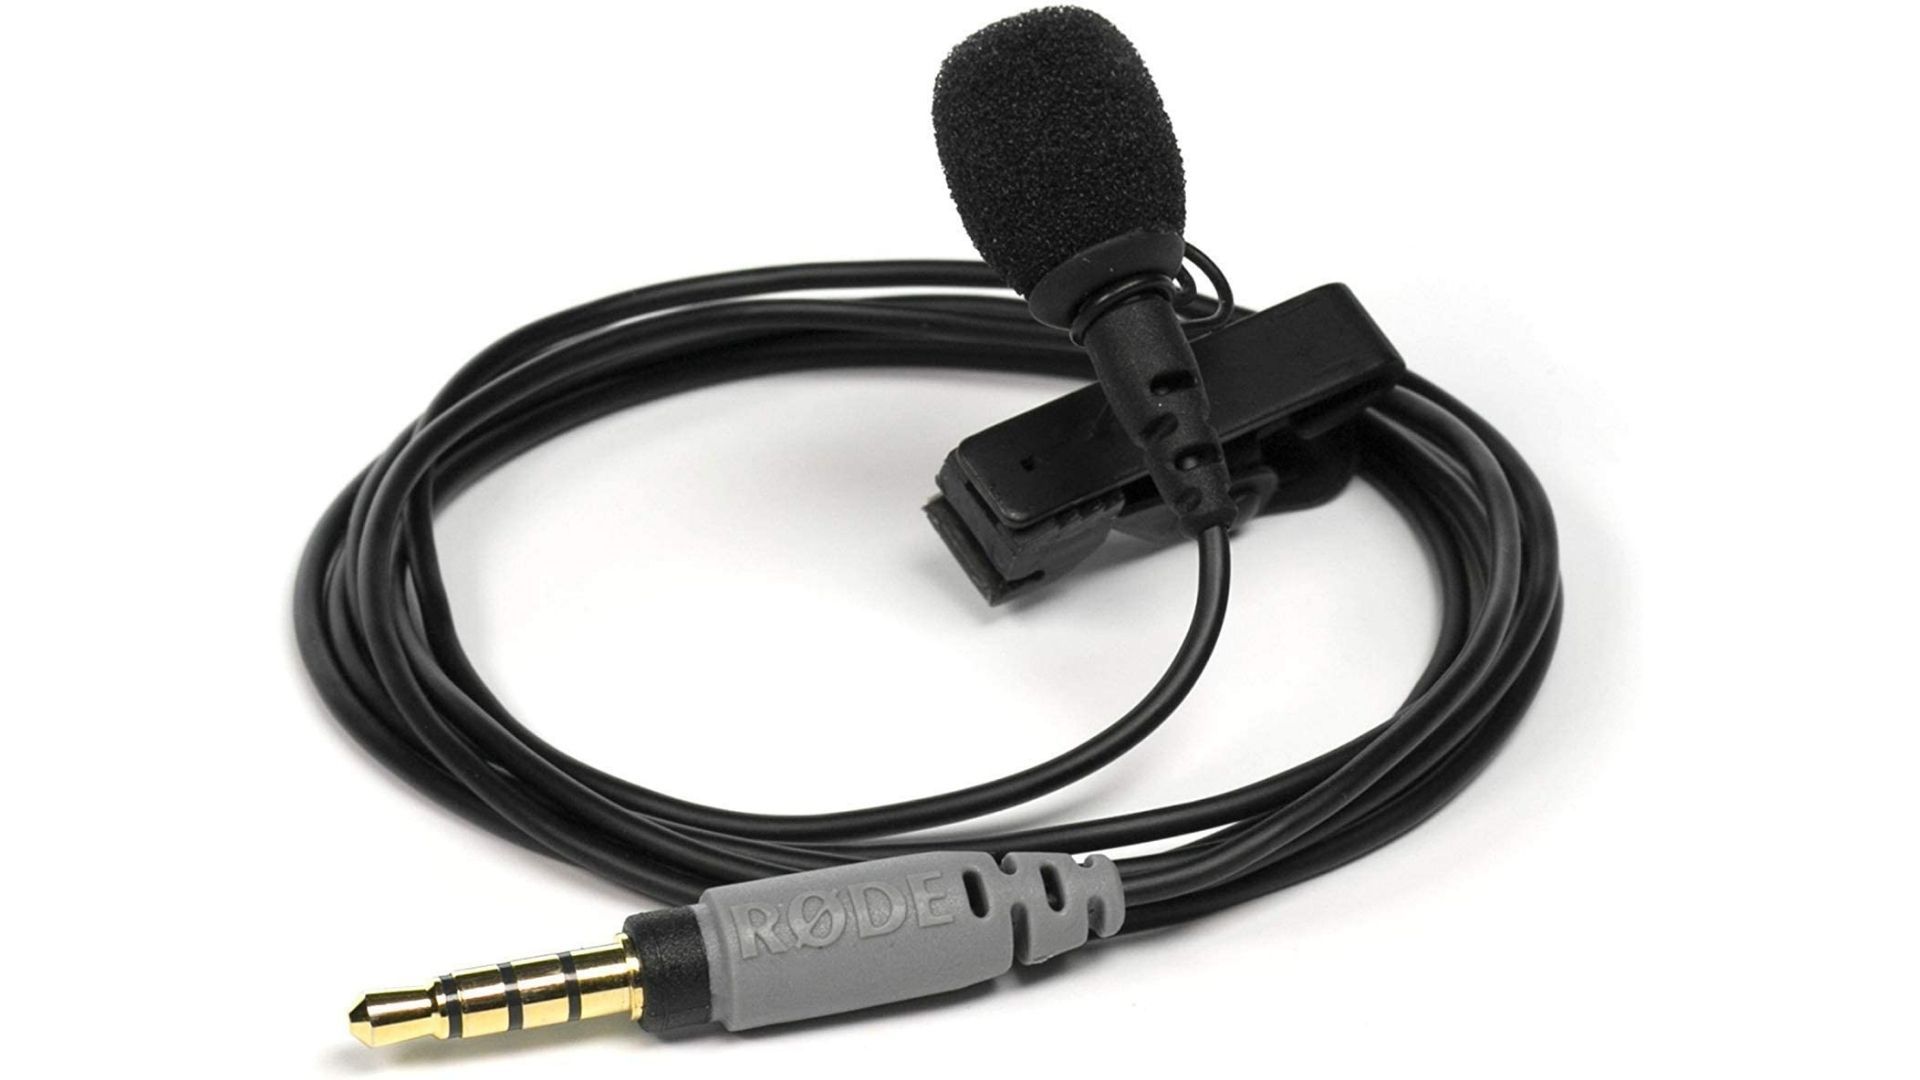 Microfone para celular com fio todo preto enrolado e em um fundo branco